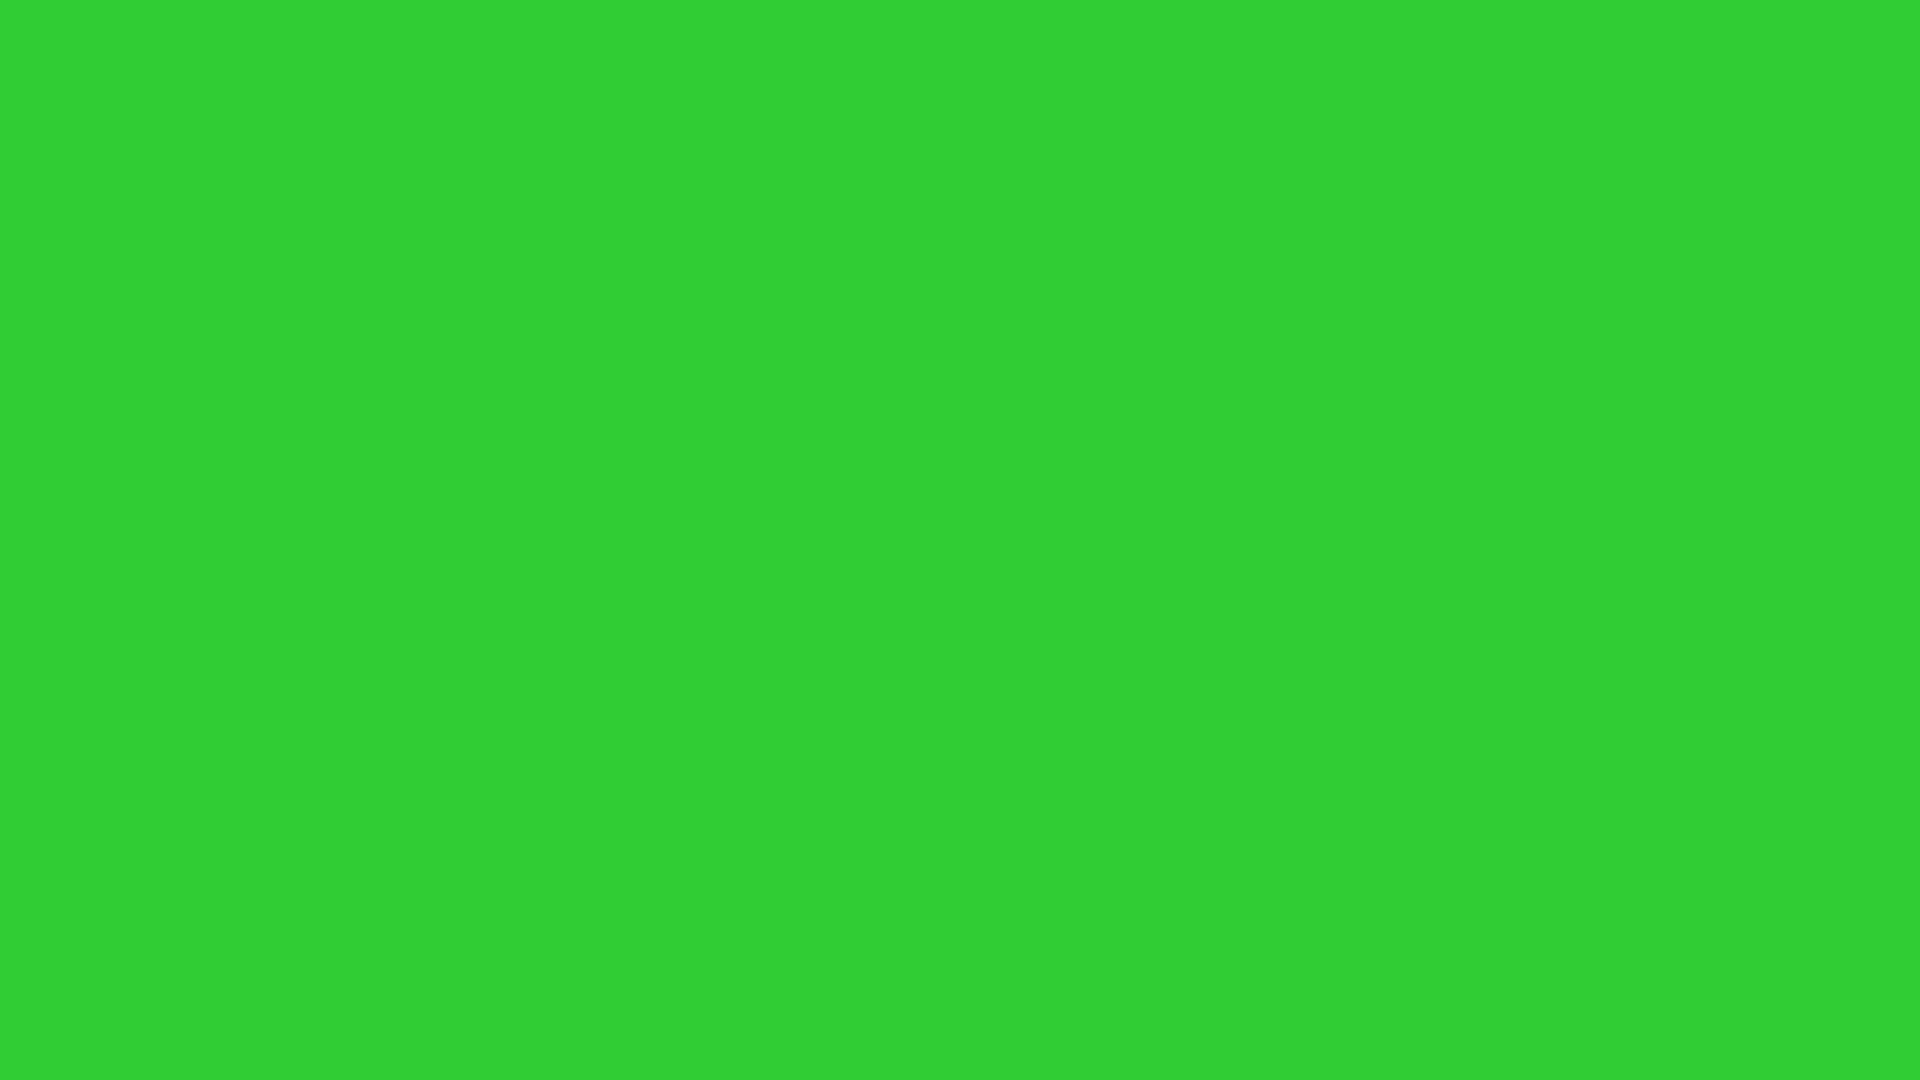 Nền màu xanh ốp trơn Lime Green (1920 x 1080): Lime Green đã trở thành một trong những màu sắc nổi bật trong thiết kế hiện đại, và nền xanh ốp trơn Lime Green sẽ giúp tạo nên một không gian làm việc đầy sức sống và tràn đầy năng lượng. Tải về và áp dụng ngay, bạn sẽ cảm thấy khác biệt ngay lập tức.